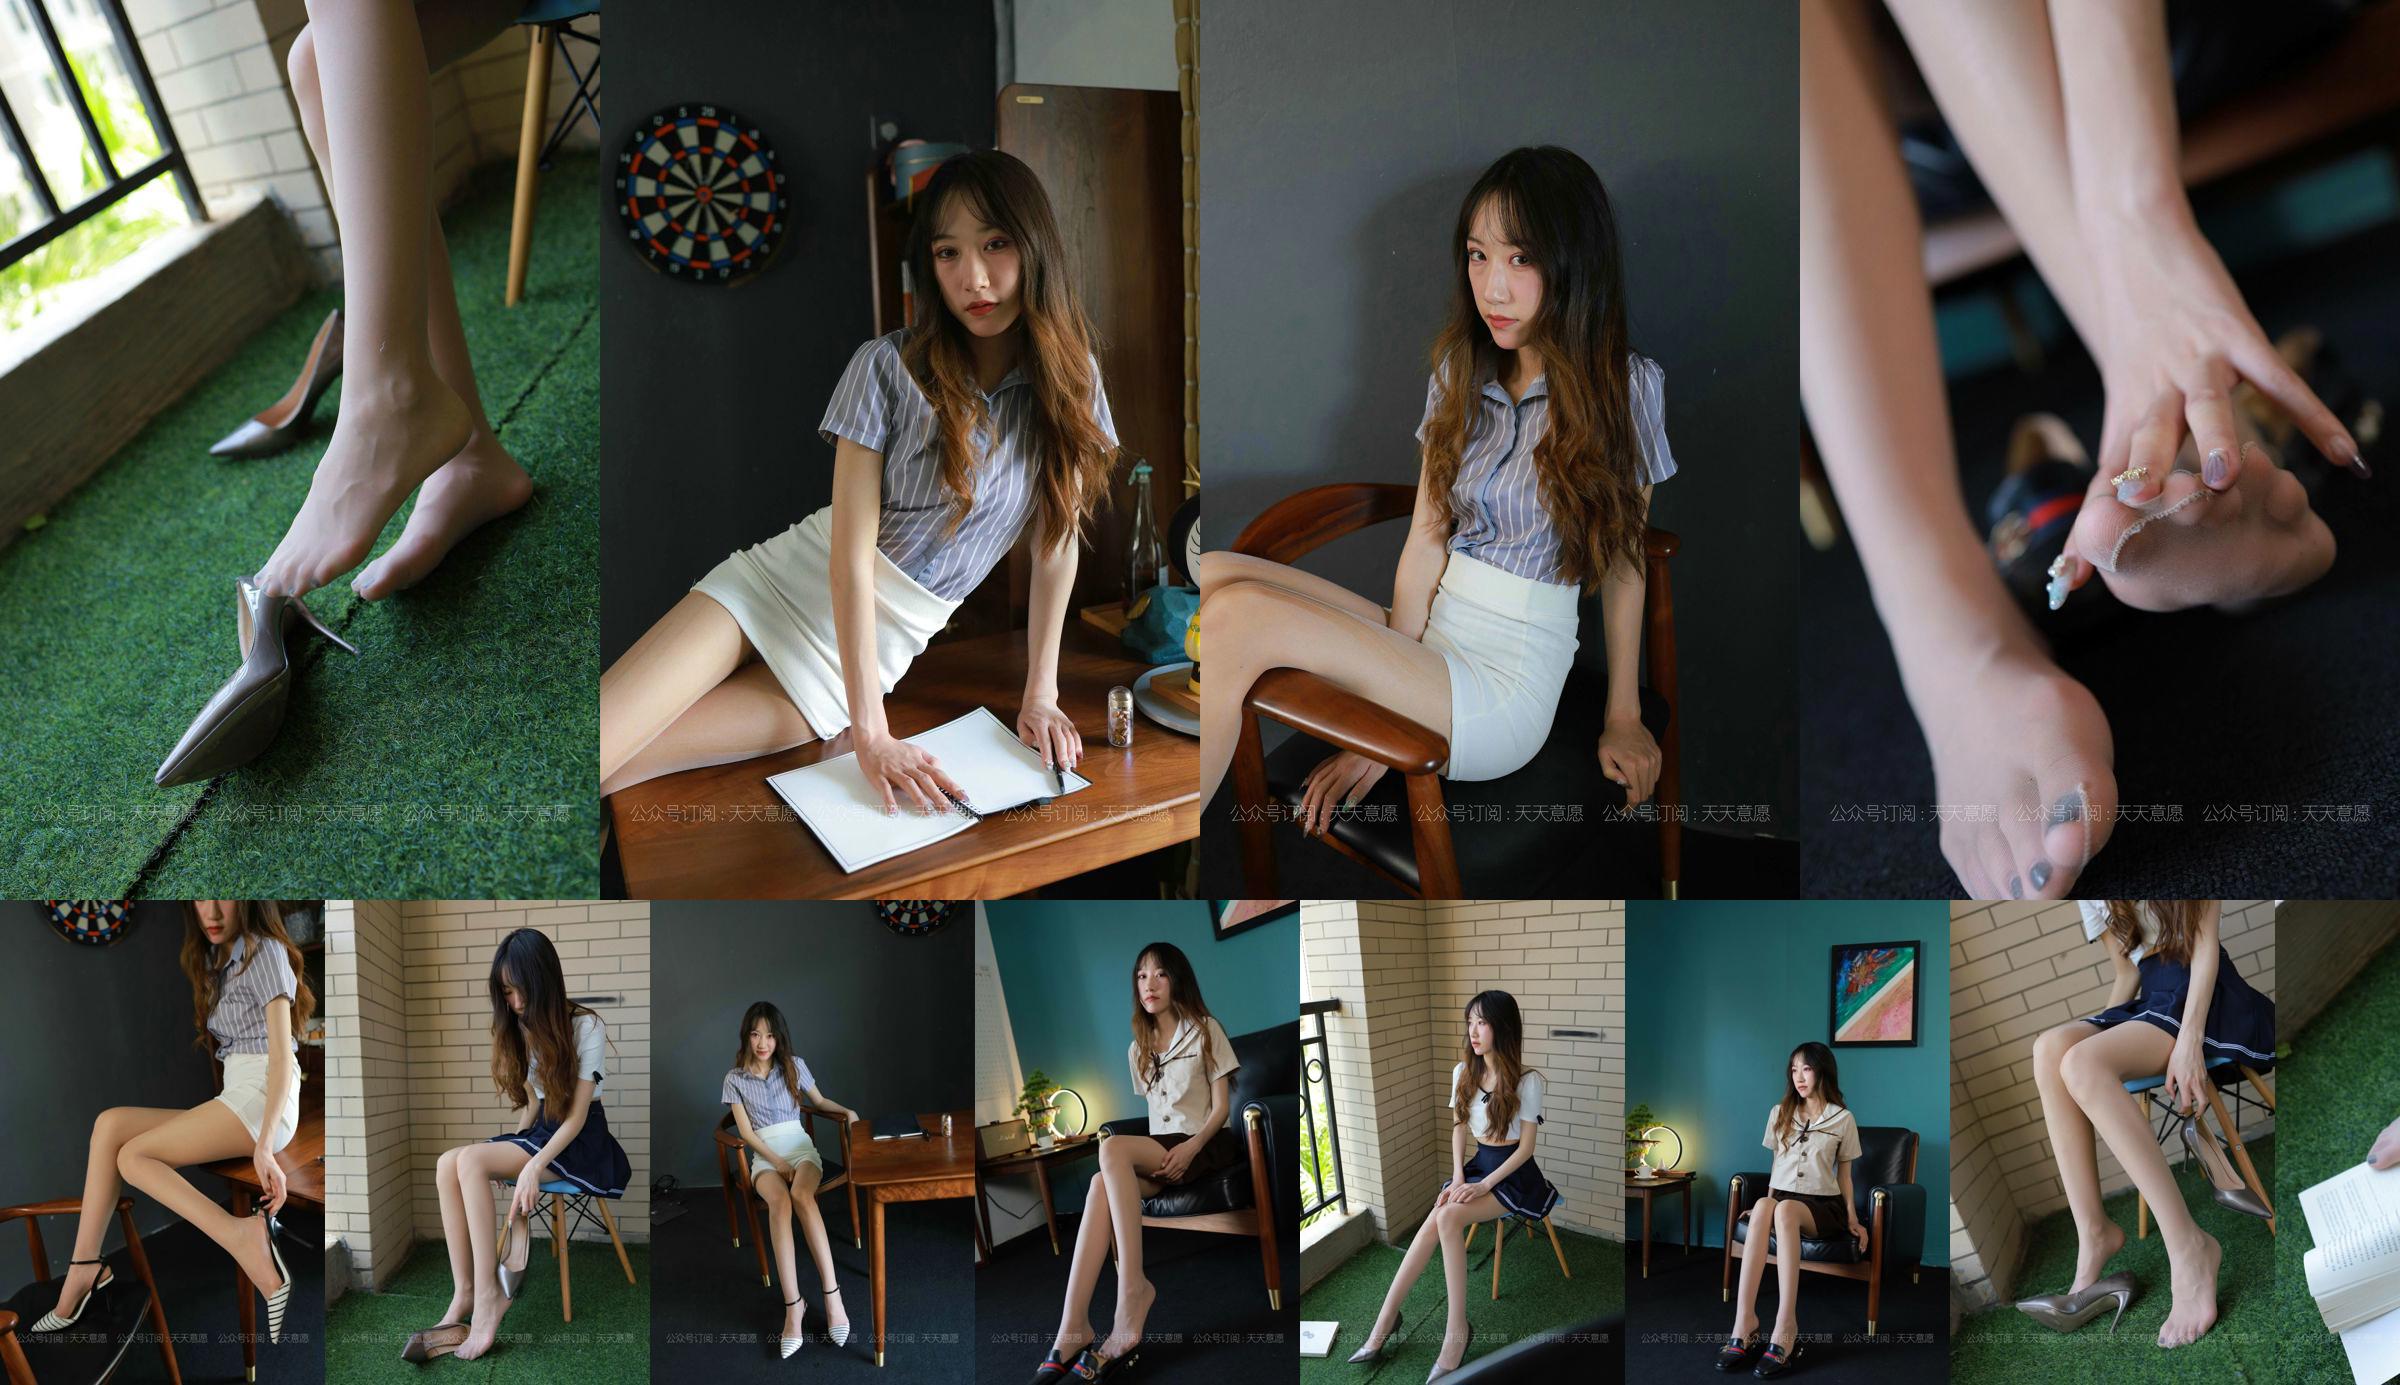 [IESS 奇思趣向] Model: Yiyi "Long-Legged Intern" No.223e4c Page 10